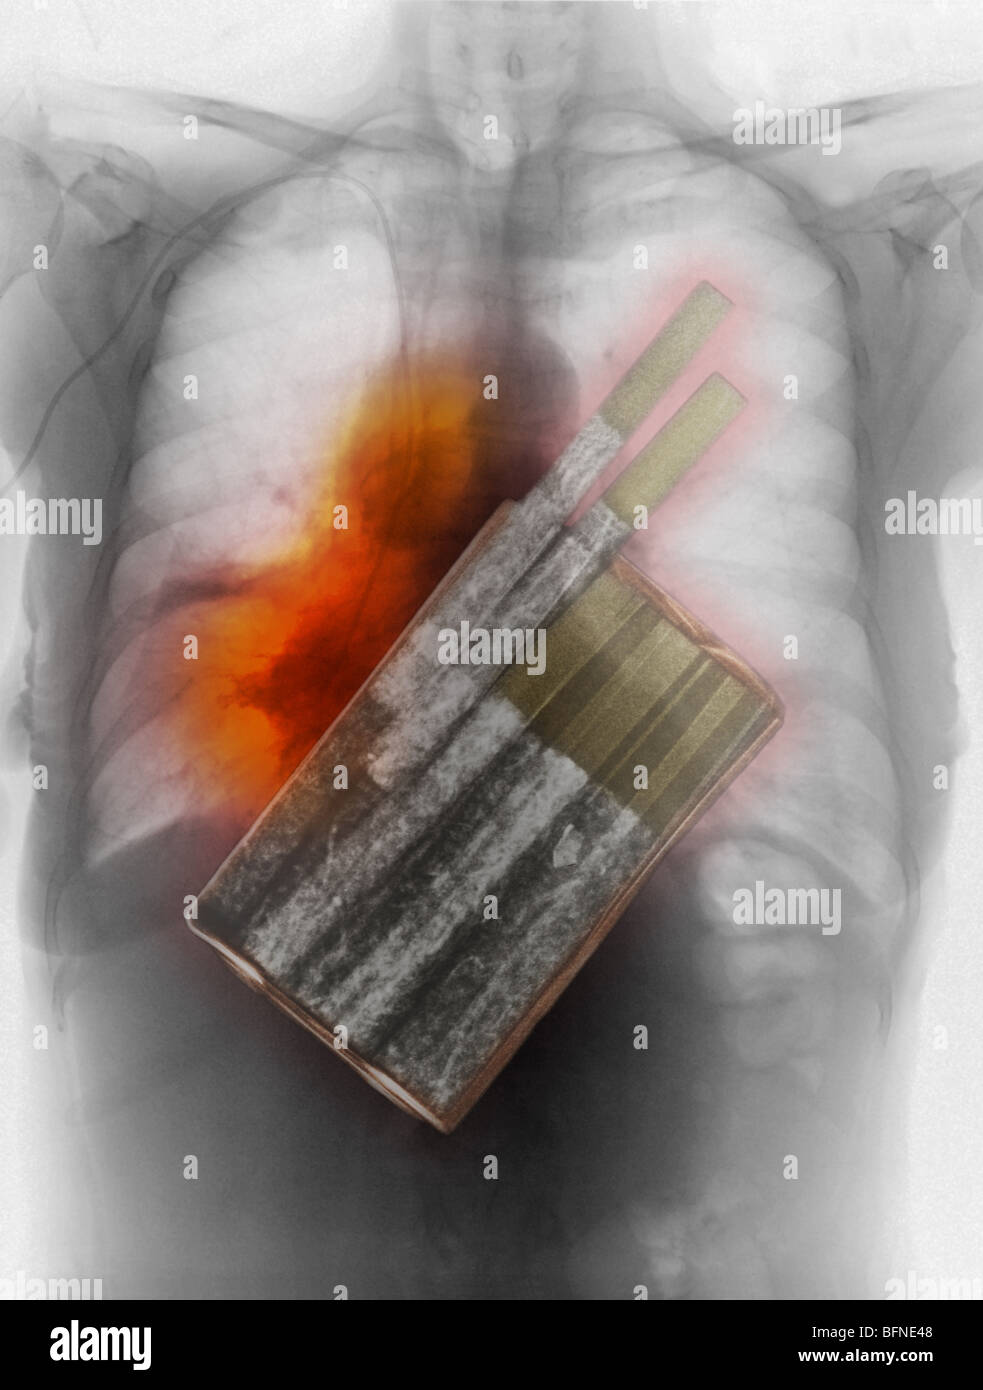 Sigarette, la principale causa di cancro ai polmoni, sovrapposto ad una radiografia del torace che mostra il cancro ai polmoni Foto Stock